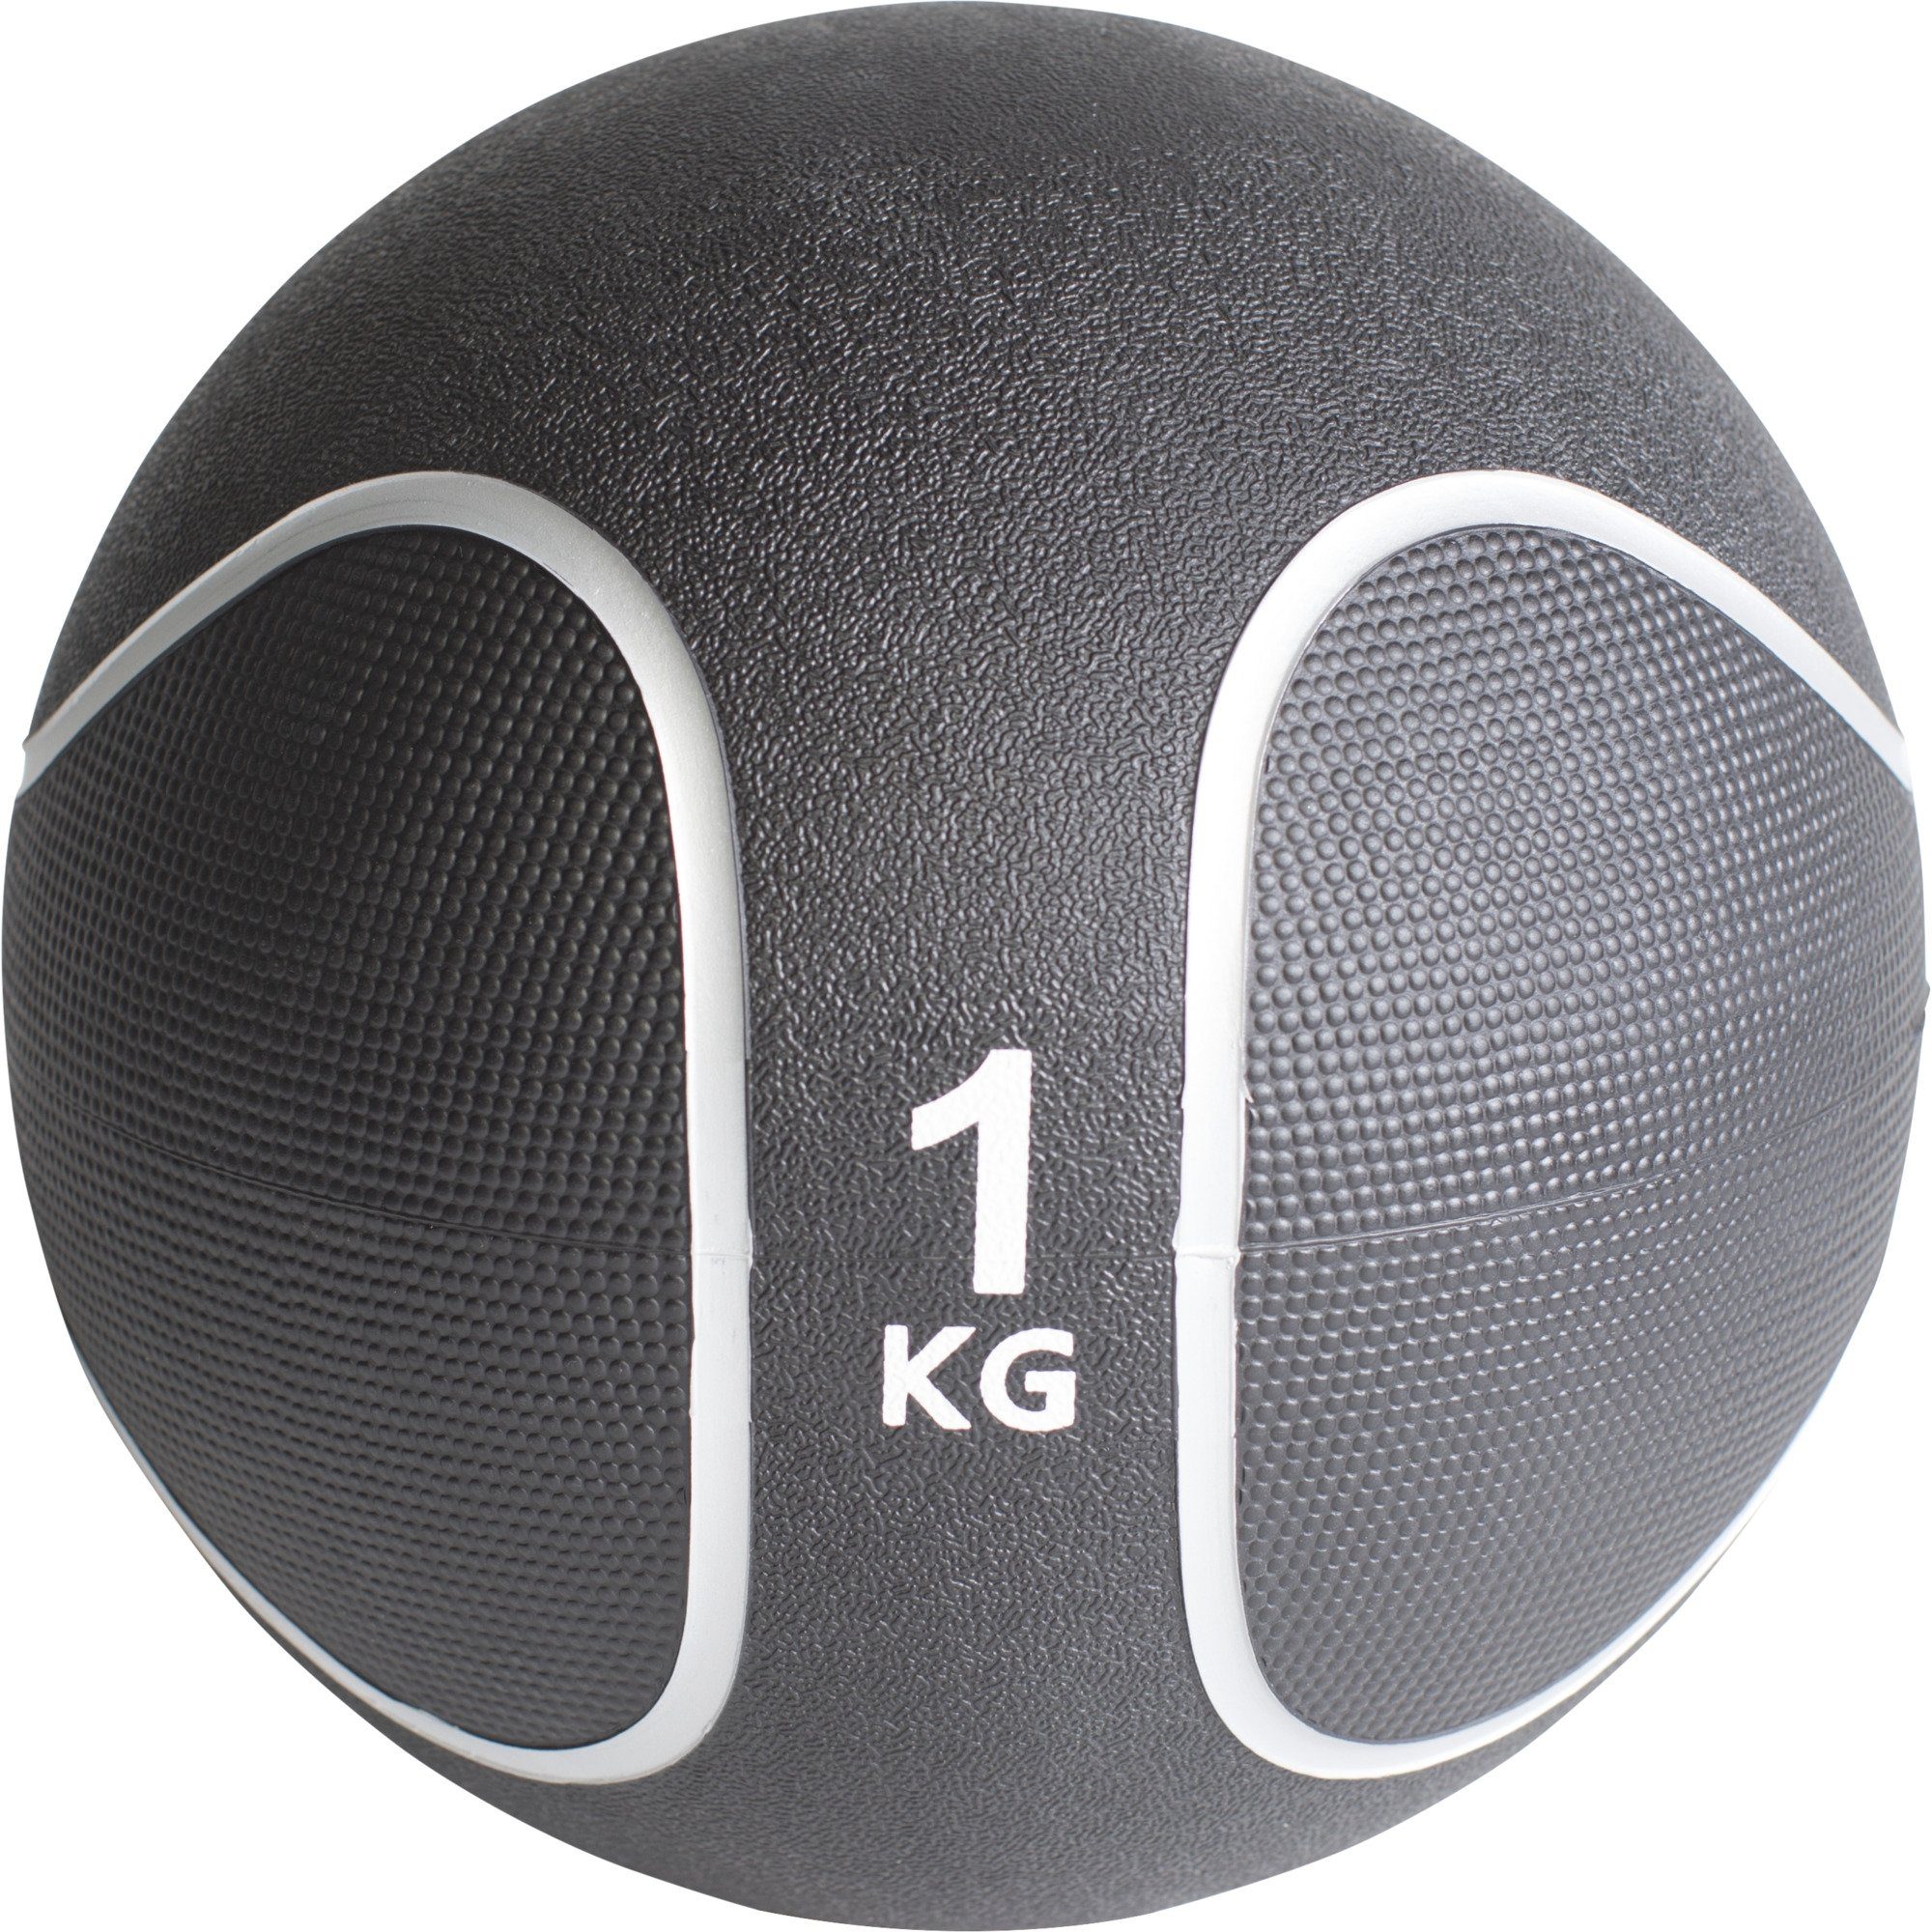 GORILLA SPORTS Medizinball Einzeln Ø 29 23 Gummi, Set, cm, oder KG 1 Fitnessball aus / rutschfest